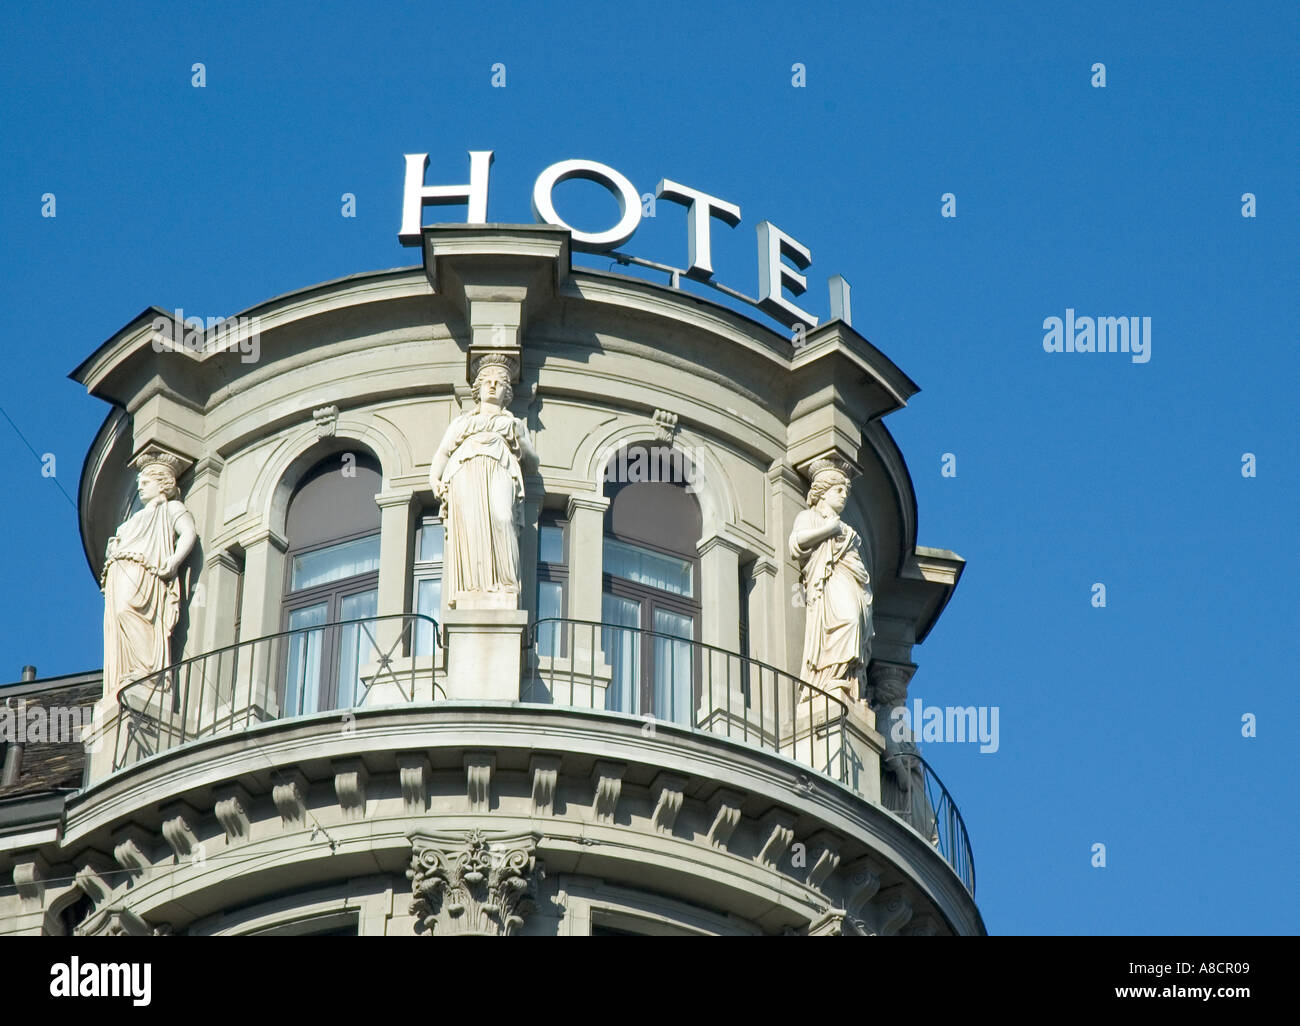 The Schweizerhof Hotel in beautiful city of Zurich in Switzerland Stock Photo